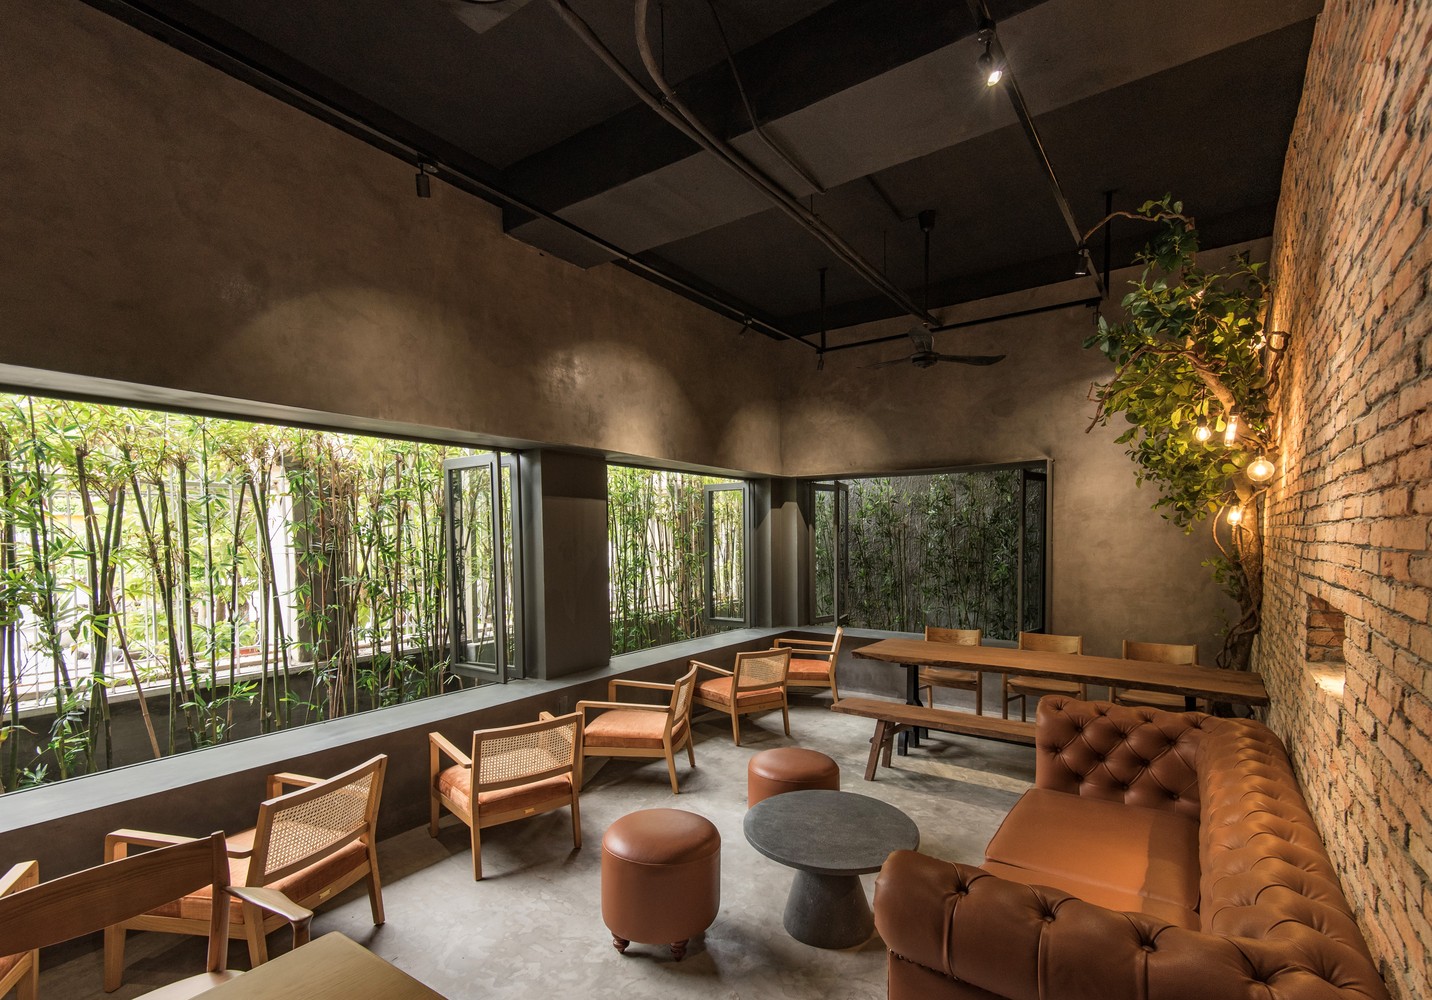  Nó góp phần xây dựng mảng xanh phía trước quán, kết nối với sân vườn cũng như tạo cho khách hàng ấn tượng về một quán cà phê thân thiện với môi trường. 